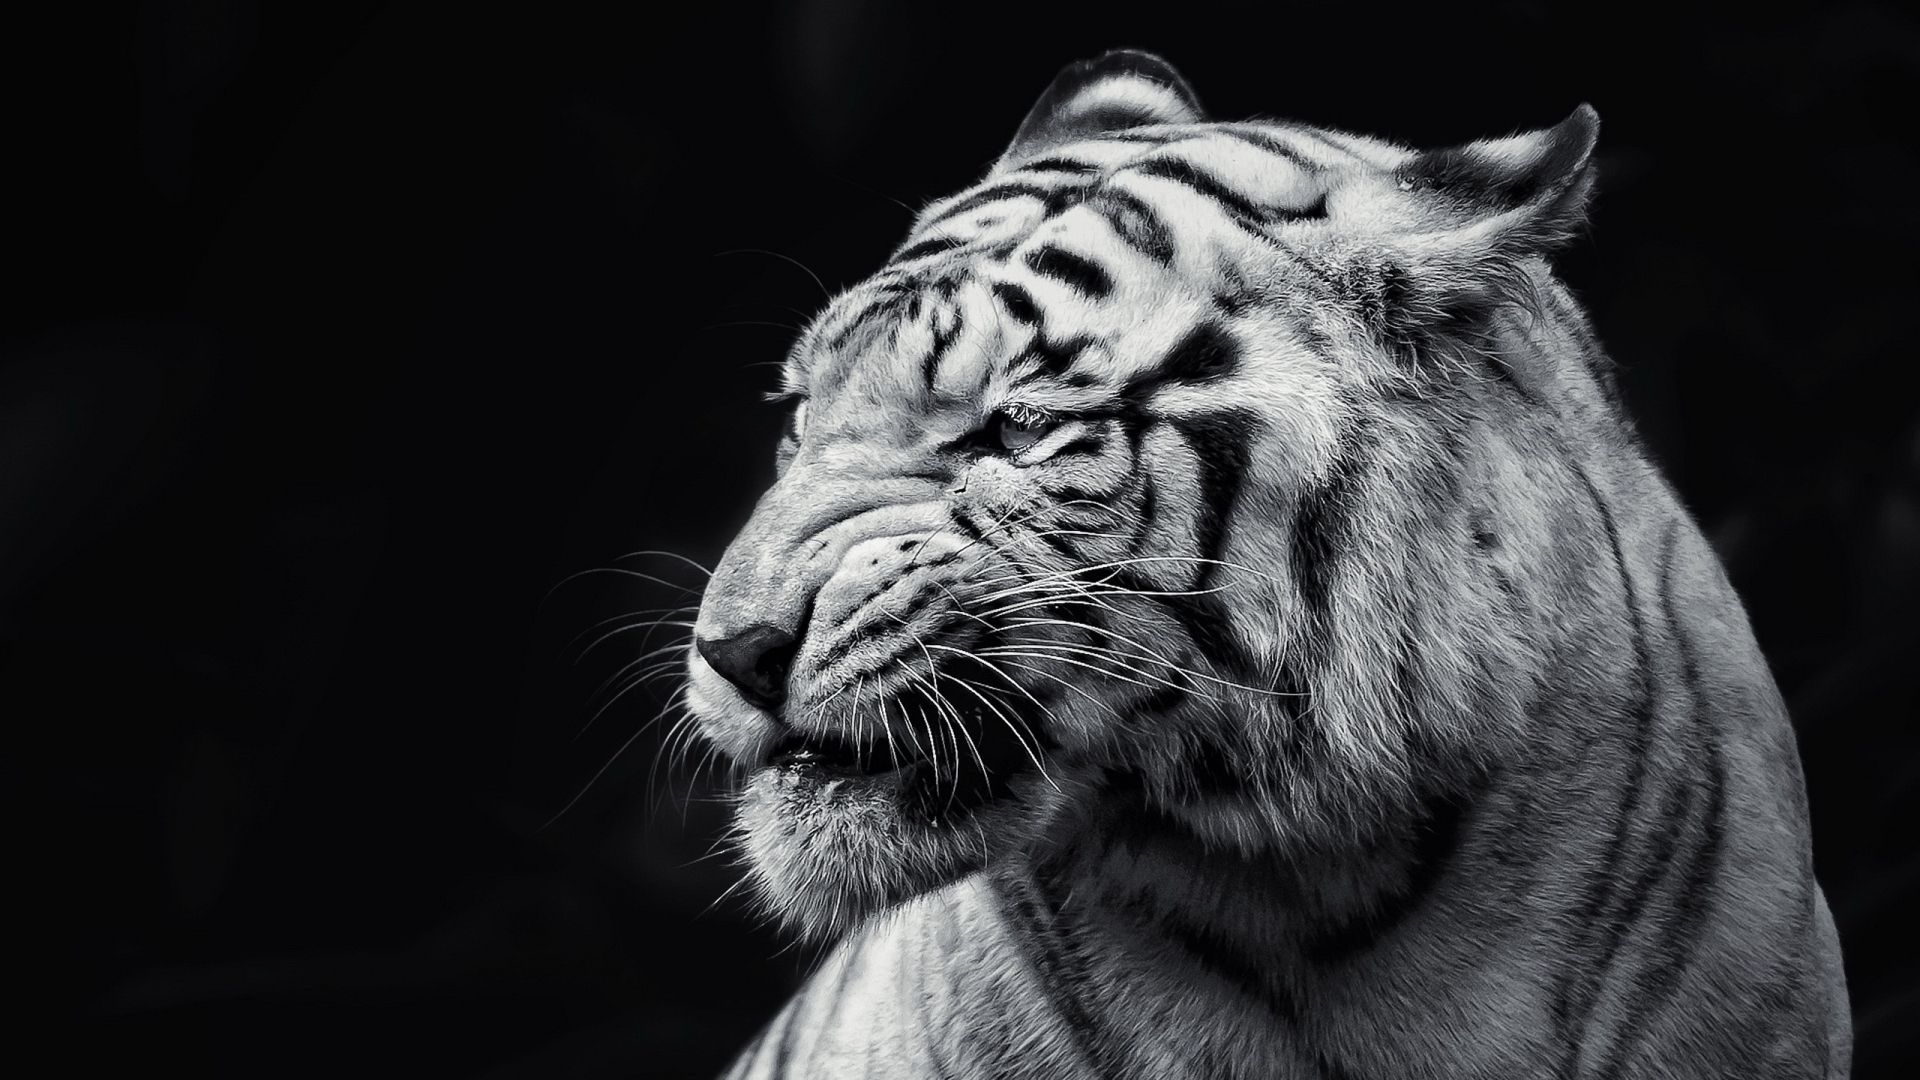 Dark tiger by PunkerLazar on DeviantArt